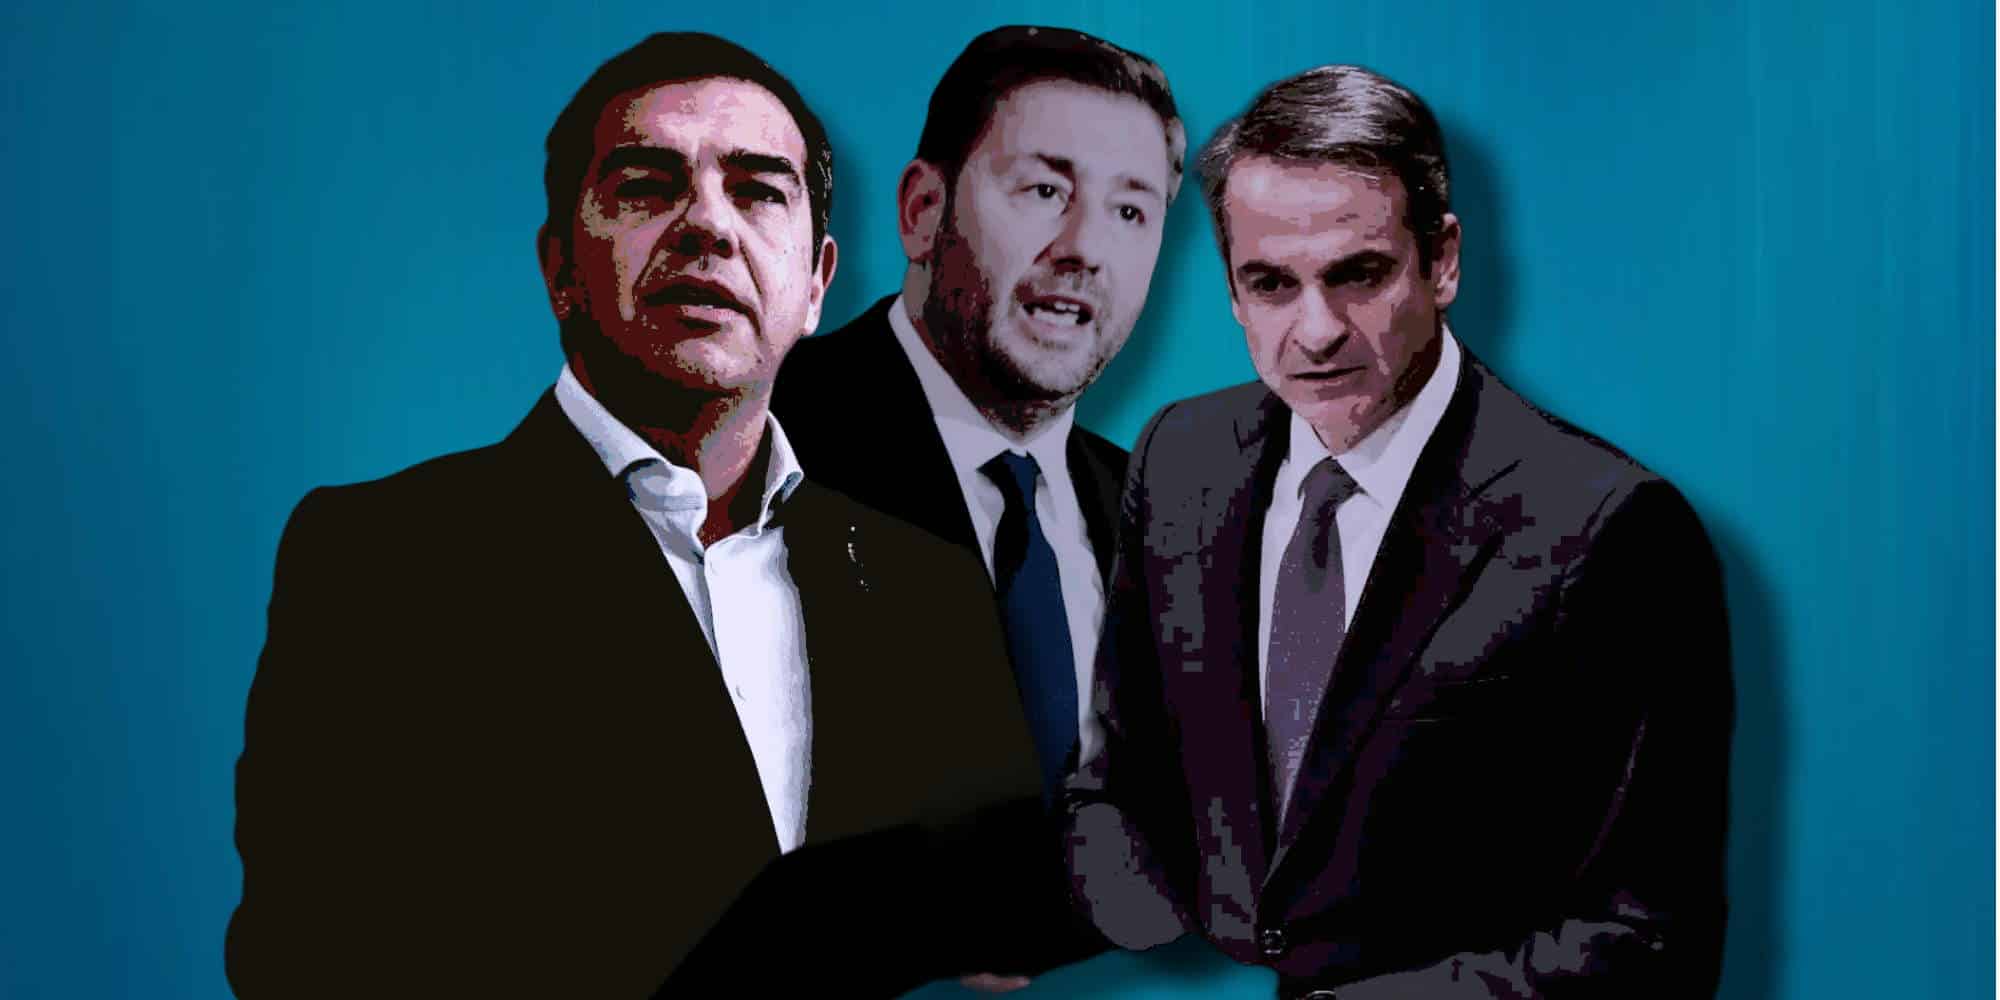 Οι αρχηγοί των τριών πρώτων σε ισχύ κοινοβουλευτικών κομμάτων, Αλέξης Τσίπρας, Νίκος Ανδρουλάκης και Κυριάκος Μητσοτάκης - Εκλογές